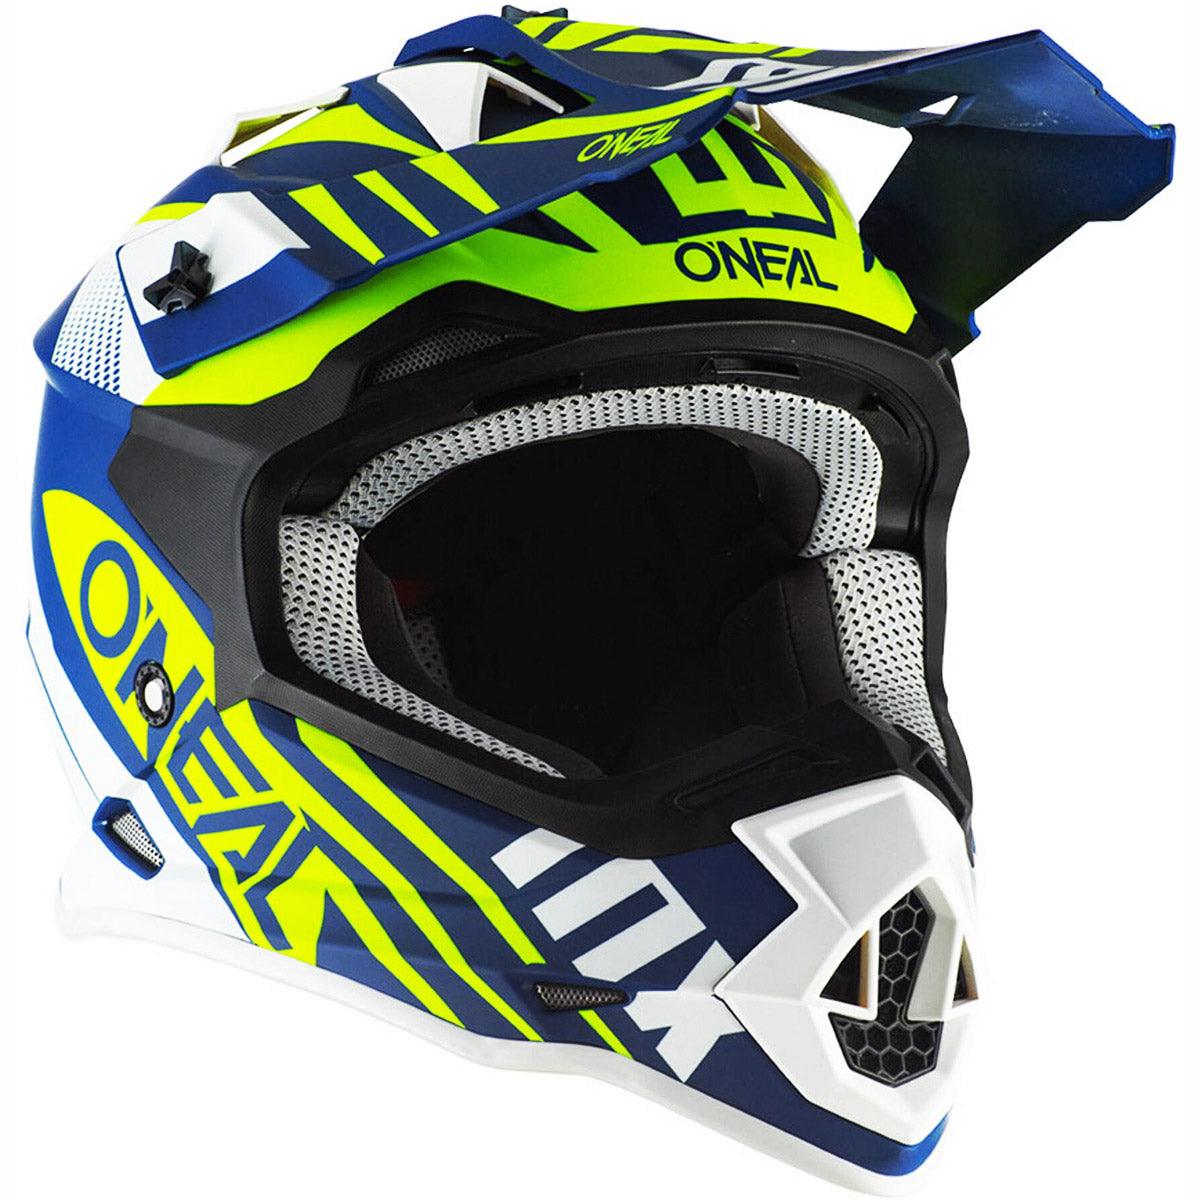 ONeal 2SRS Helmet Spyde 2.0 - Blue White Neon Yel - The Motocrosshut